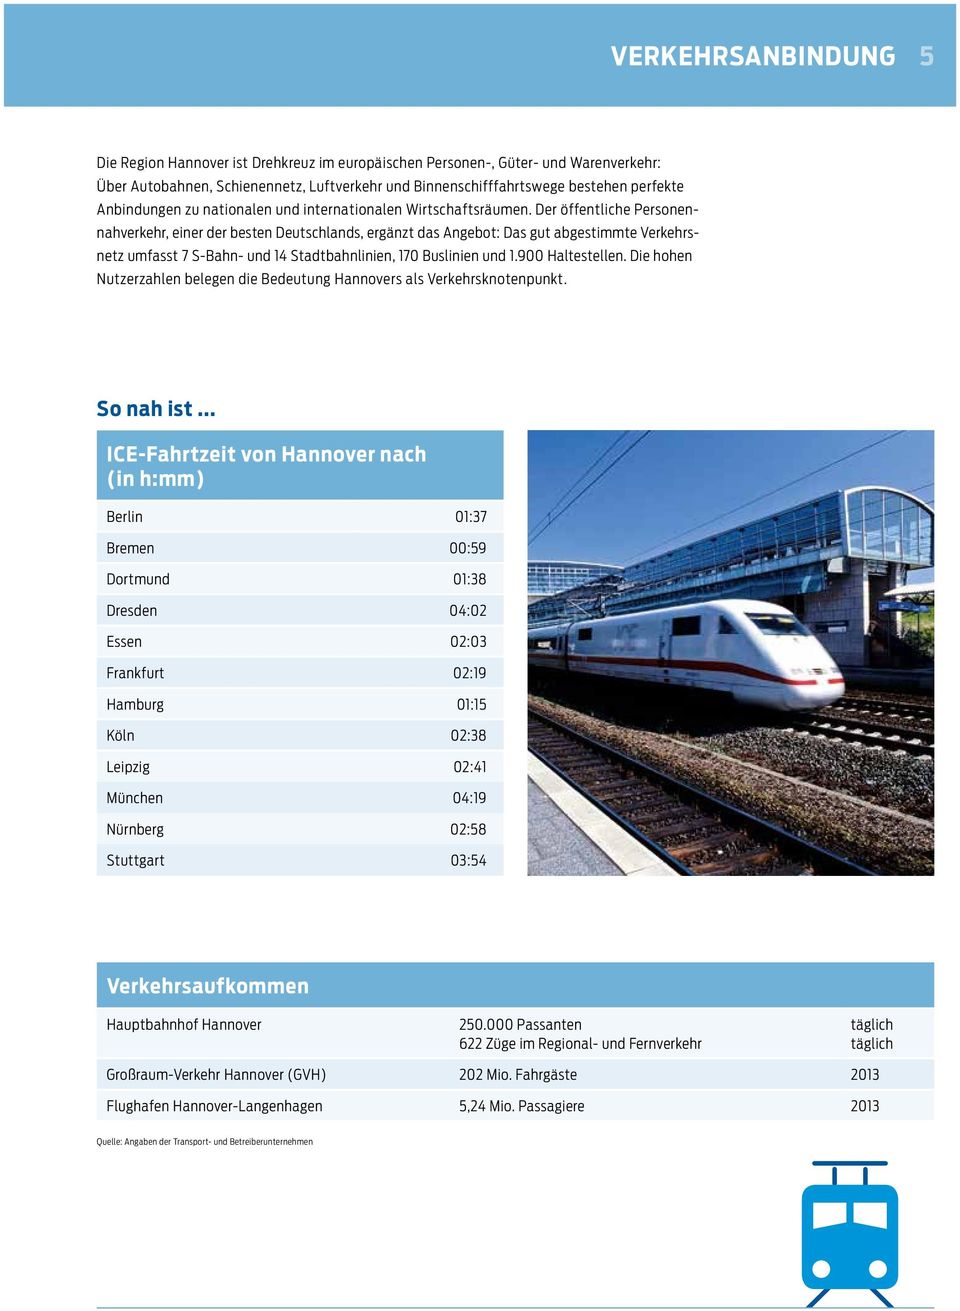 Der öffentliche Personennahverkehr, einer der besten Deutschlands, ergänzt das Angebot: Das gut abgestimmte Verkehrsnetz umfasst 7 S-Bahn- und 14 Stadtbahnlinien, 170 Buslinien und 1.900 Haltestellen.